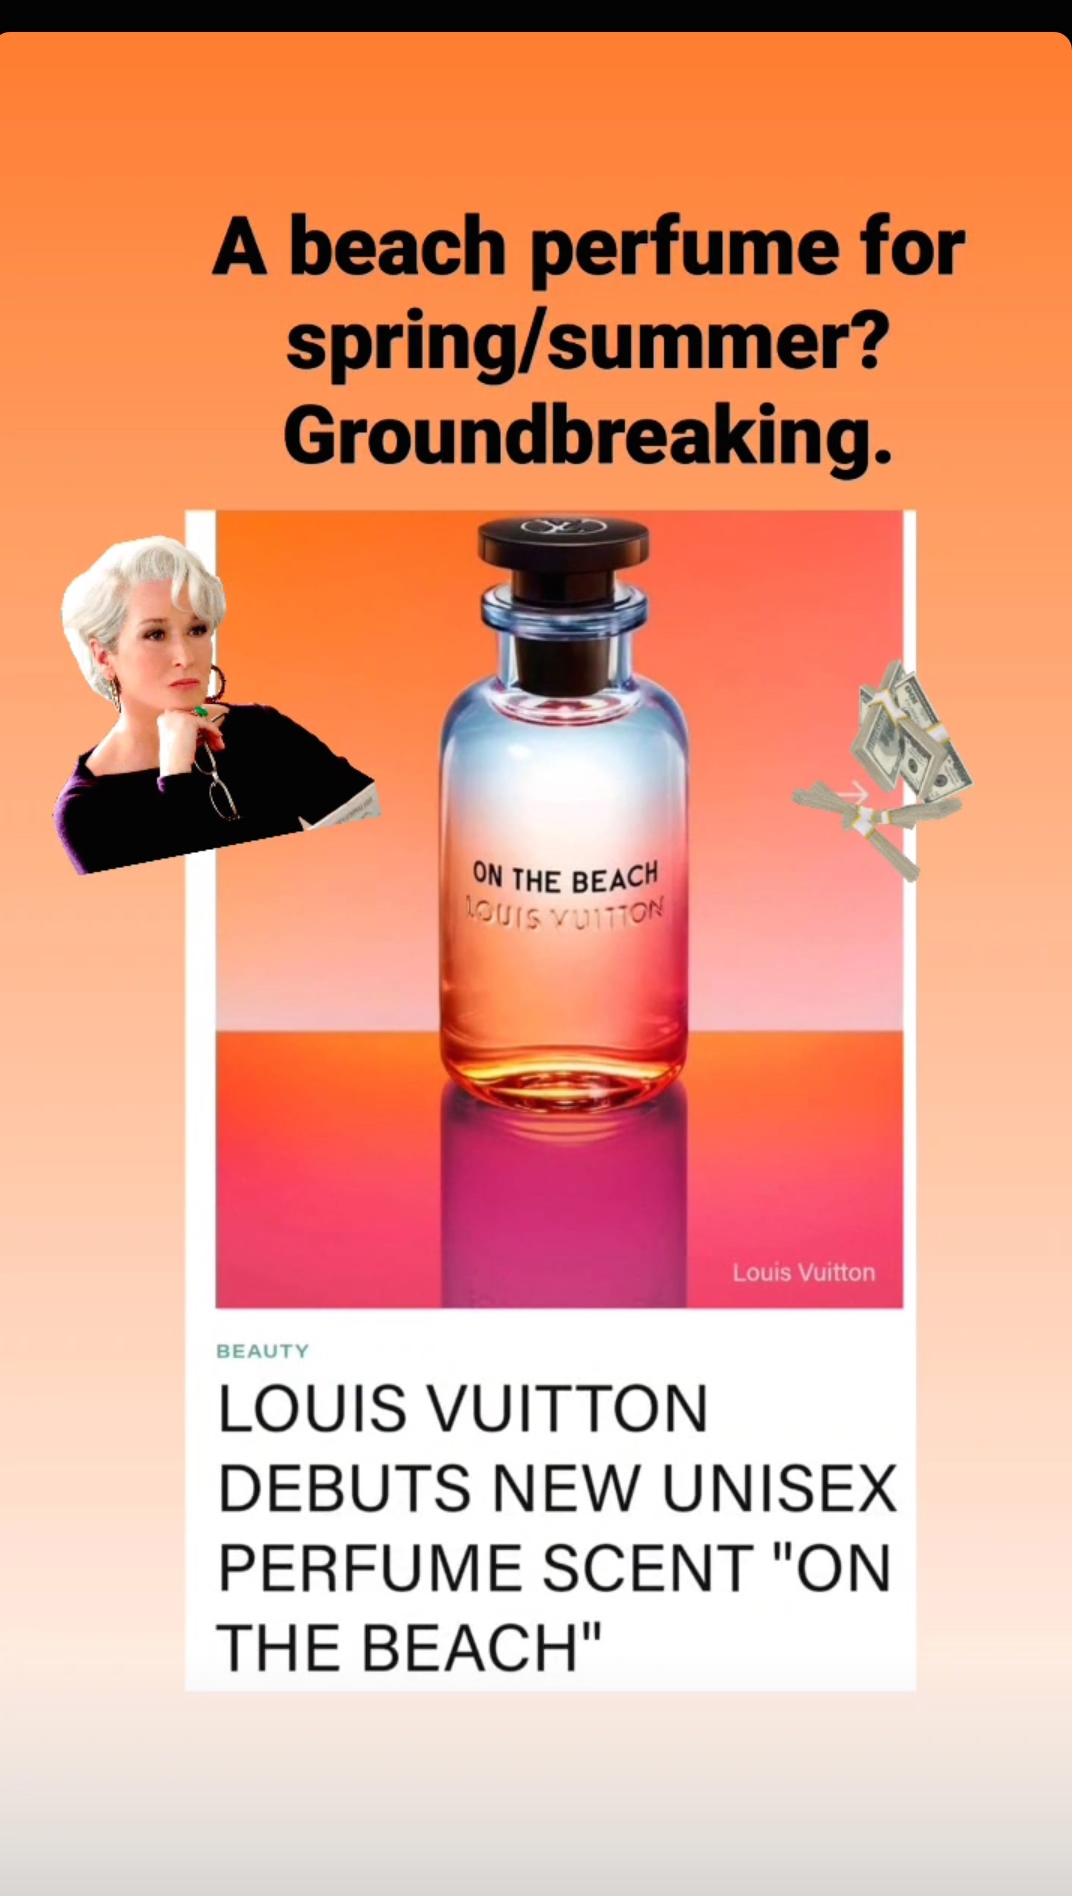 Mua Nước Hoa Louis Vuitton LV On The Beach Eau De Parfum 100ml  Louis  Vuitton  Mua tại Vua Hàng Hiệu h030755